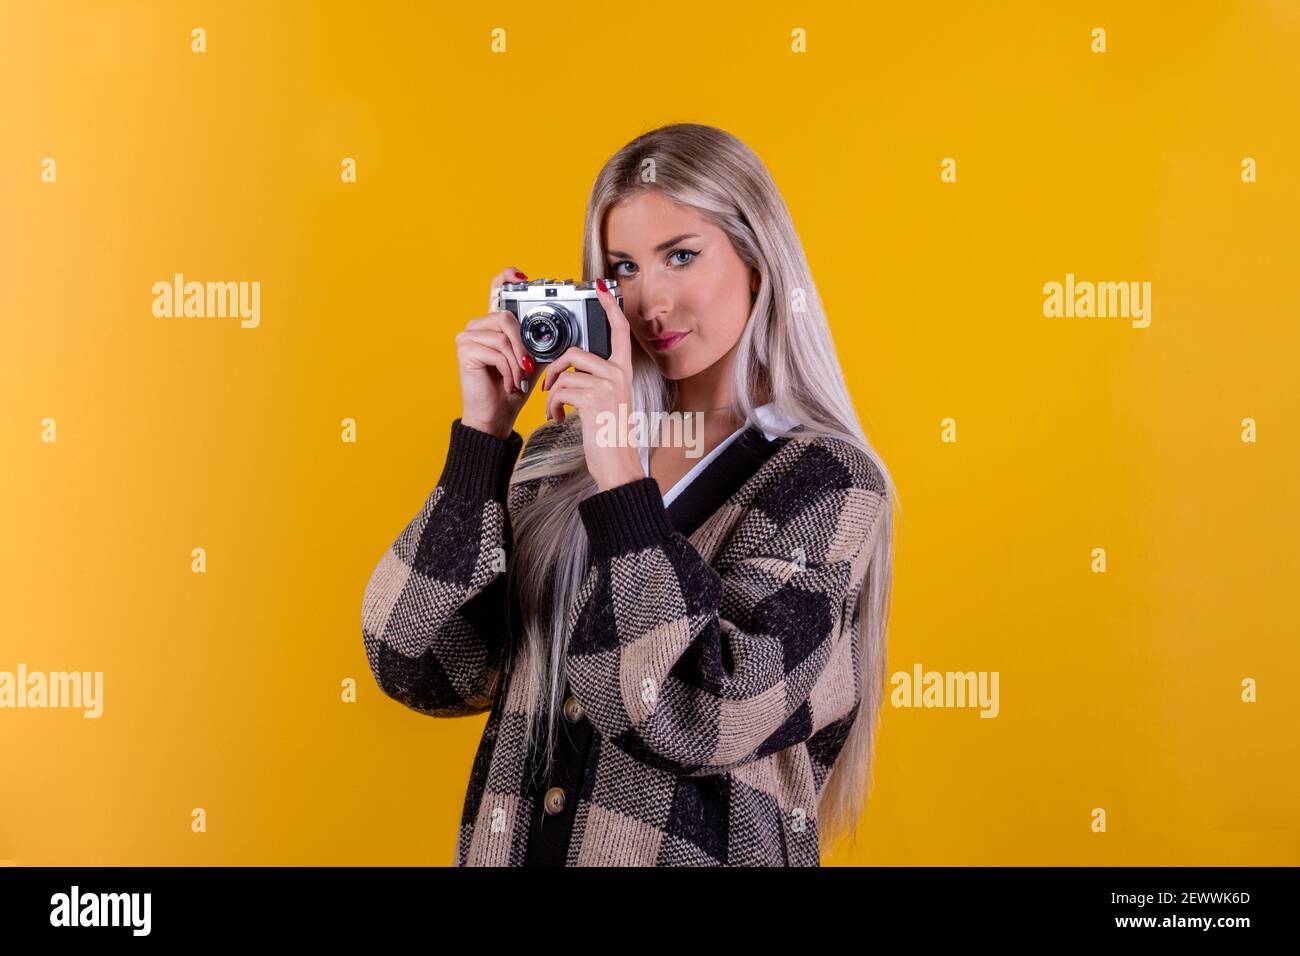 Modischer Look, schönes junges Frauenmodell mit Retro-Kamera, isoliert auf gelbem Hintergrund - Nahaufnahmeportrait einer süßen Fotografin ist tak Stockfoto